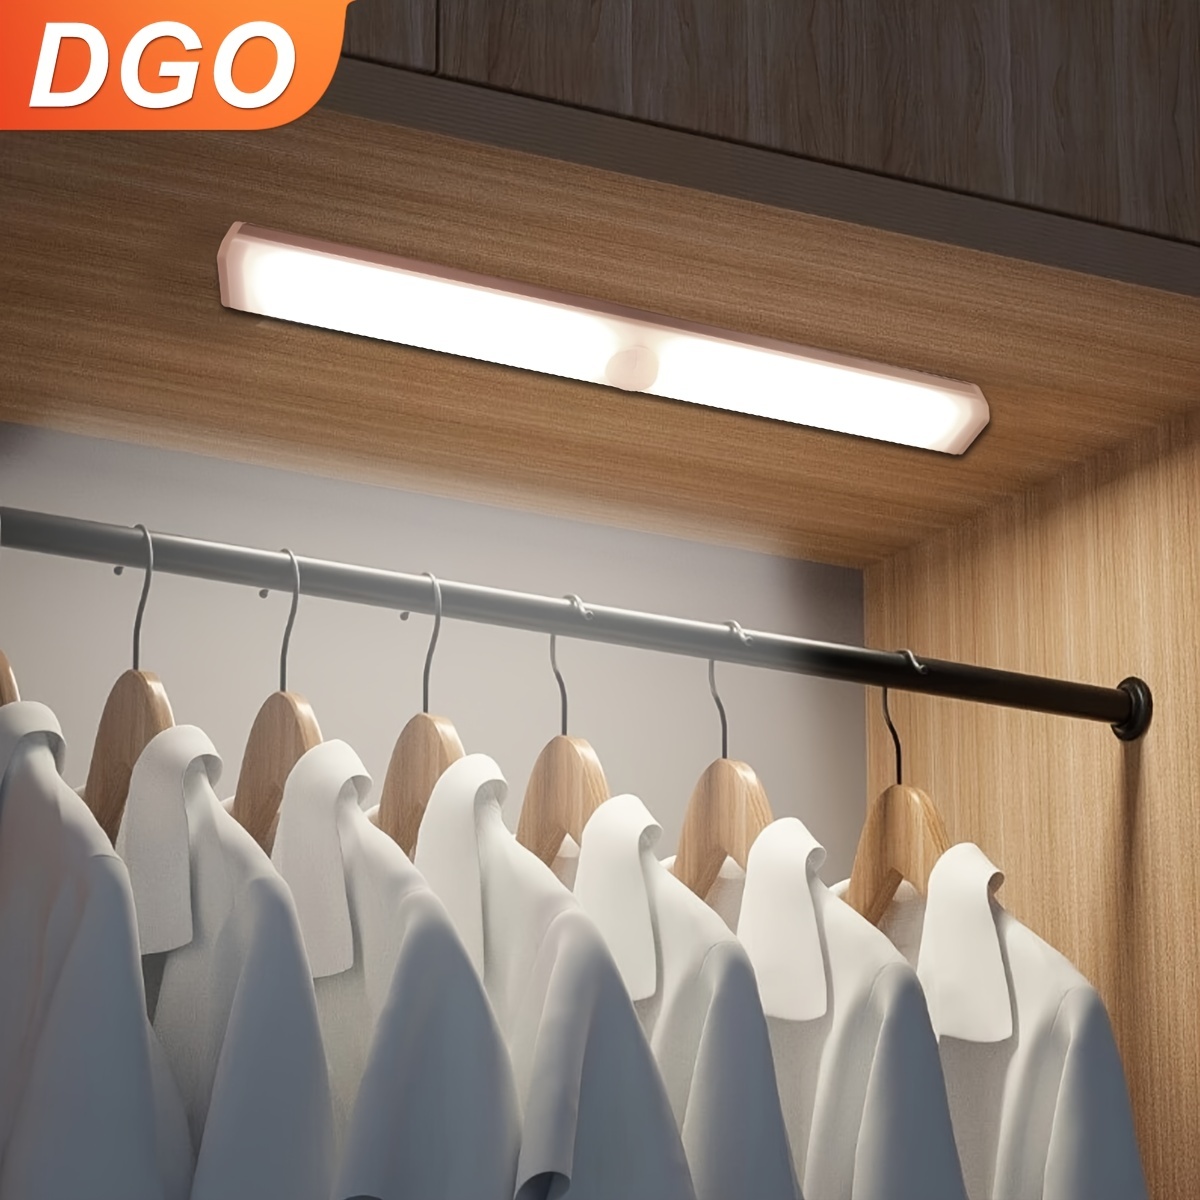 Instalar tiras de luz LED bajo los armarios es fácil